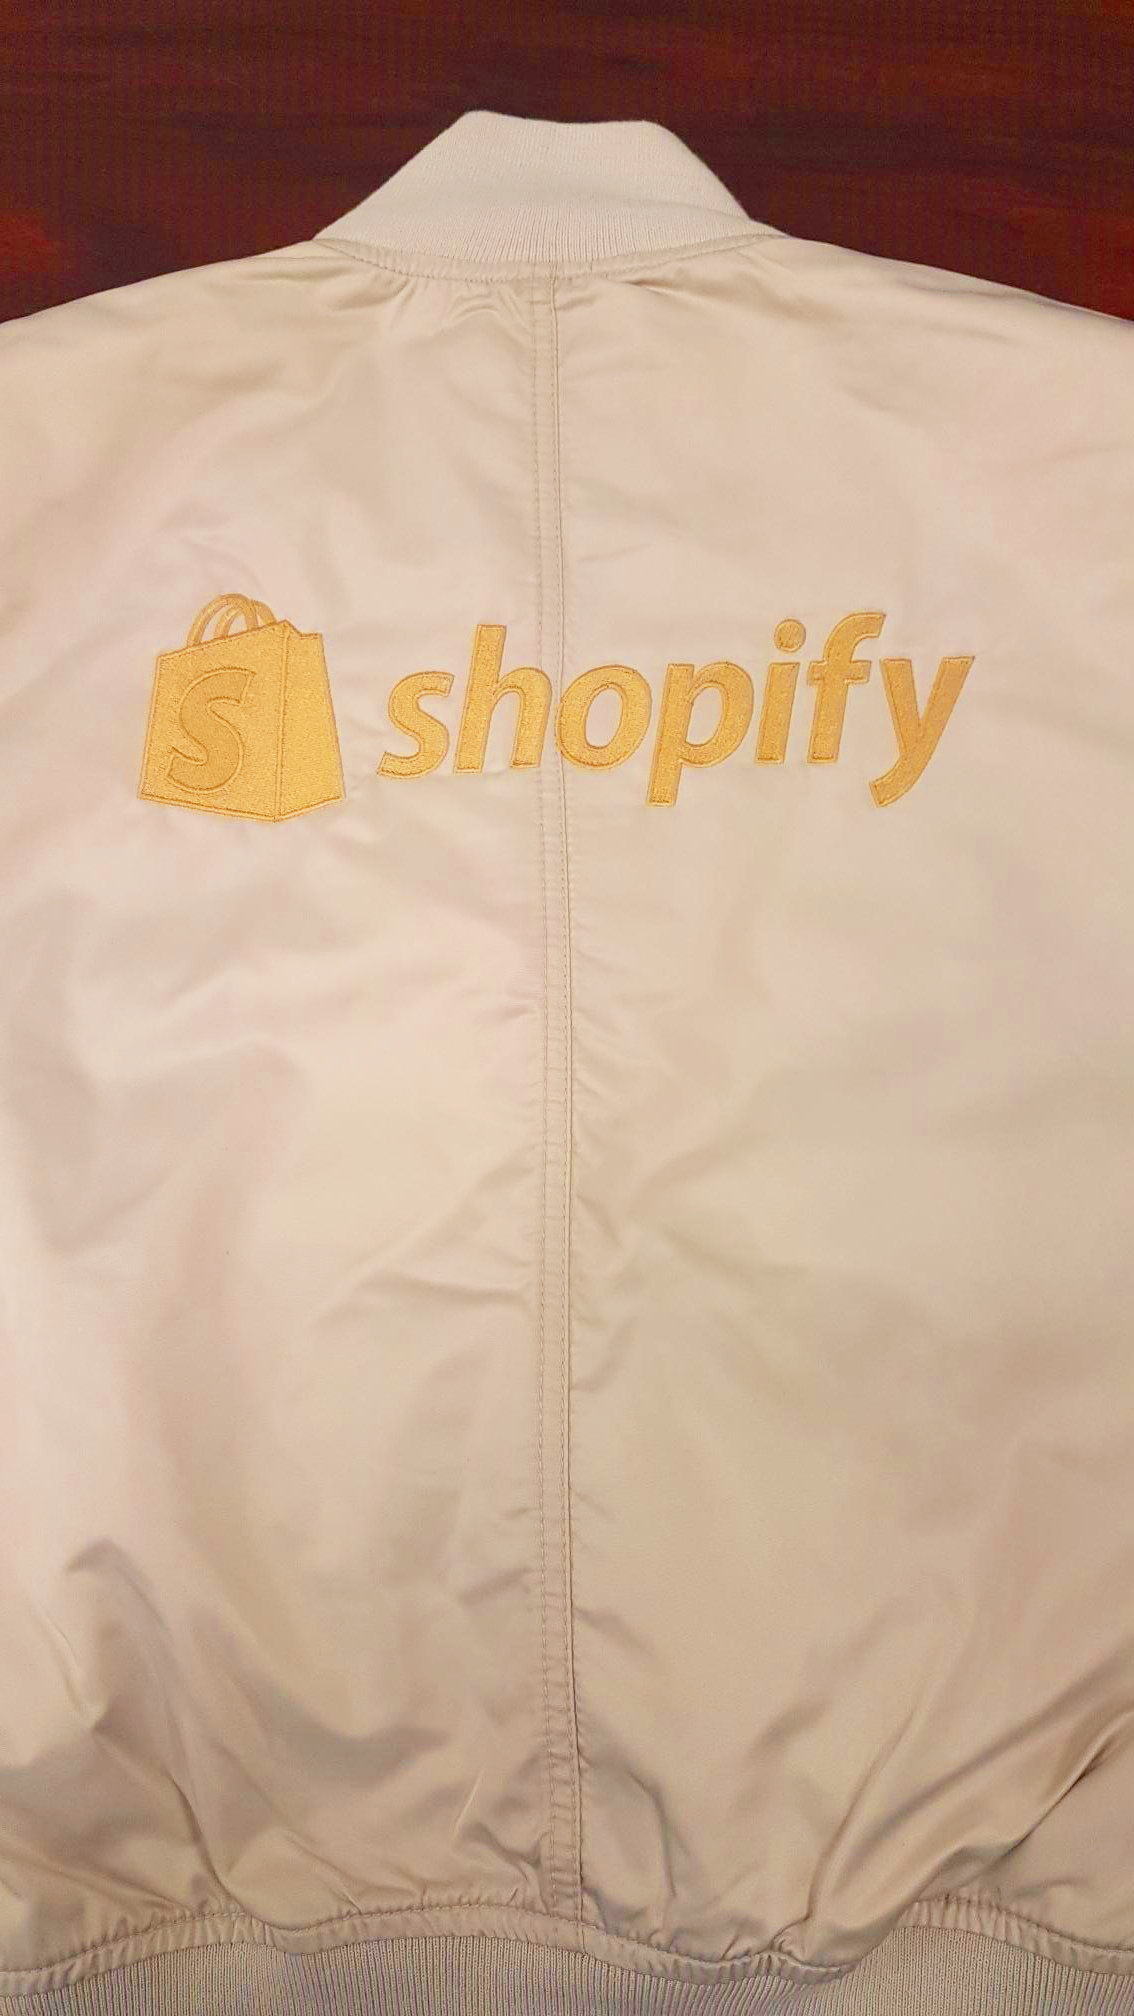 Shopify Back.jpg